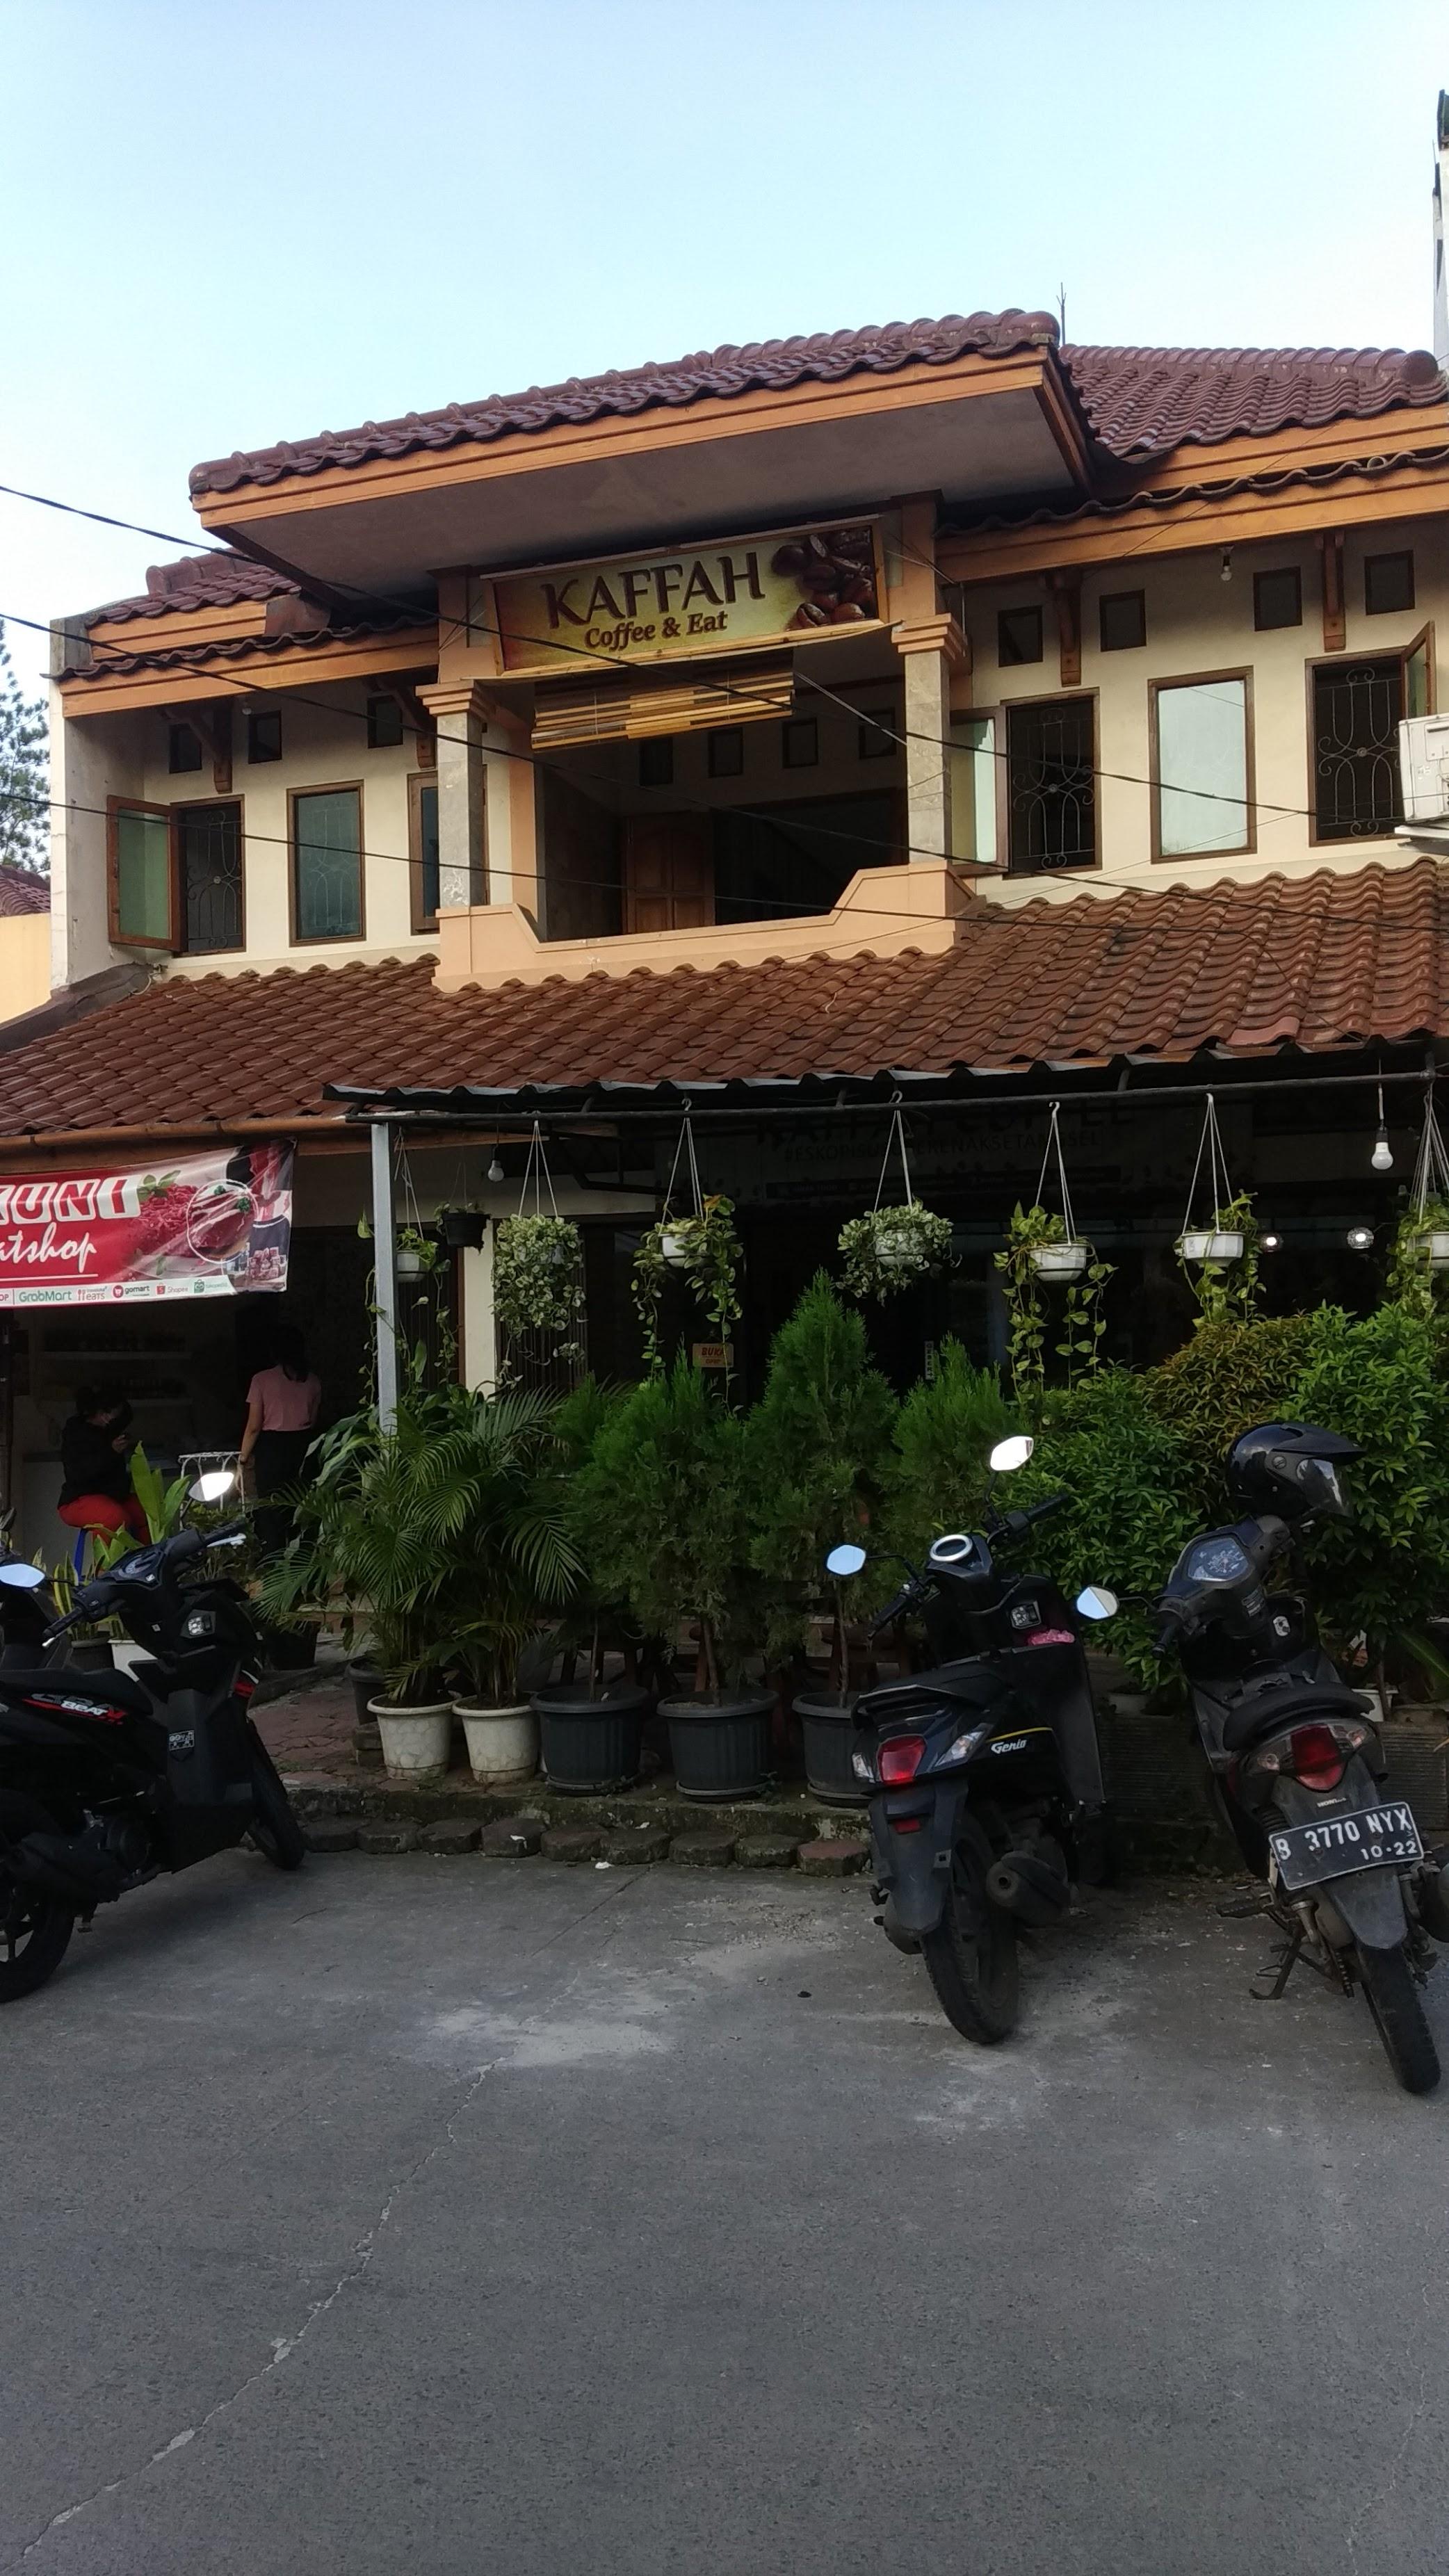 Kaffah Coffee Shop review